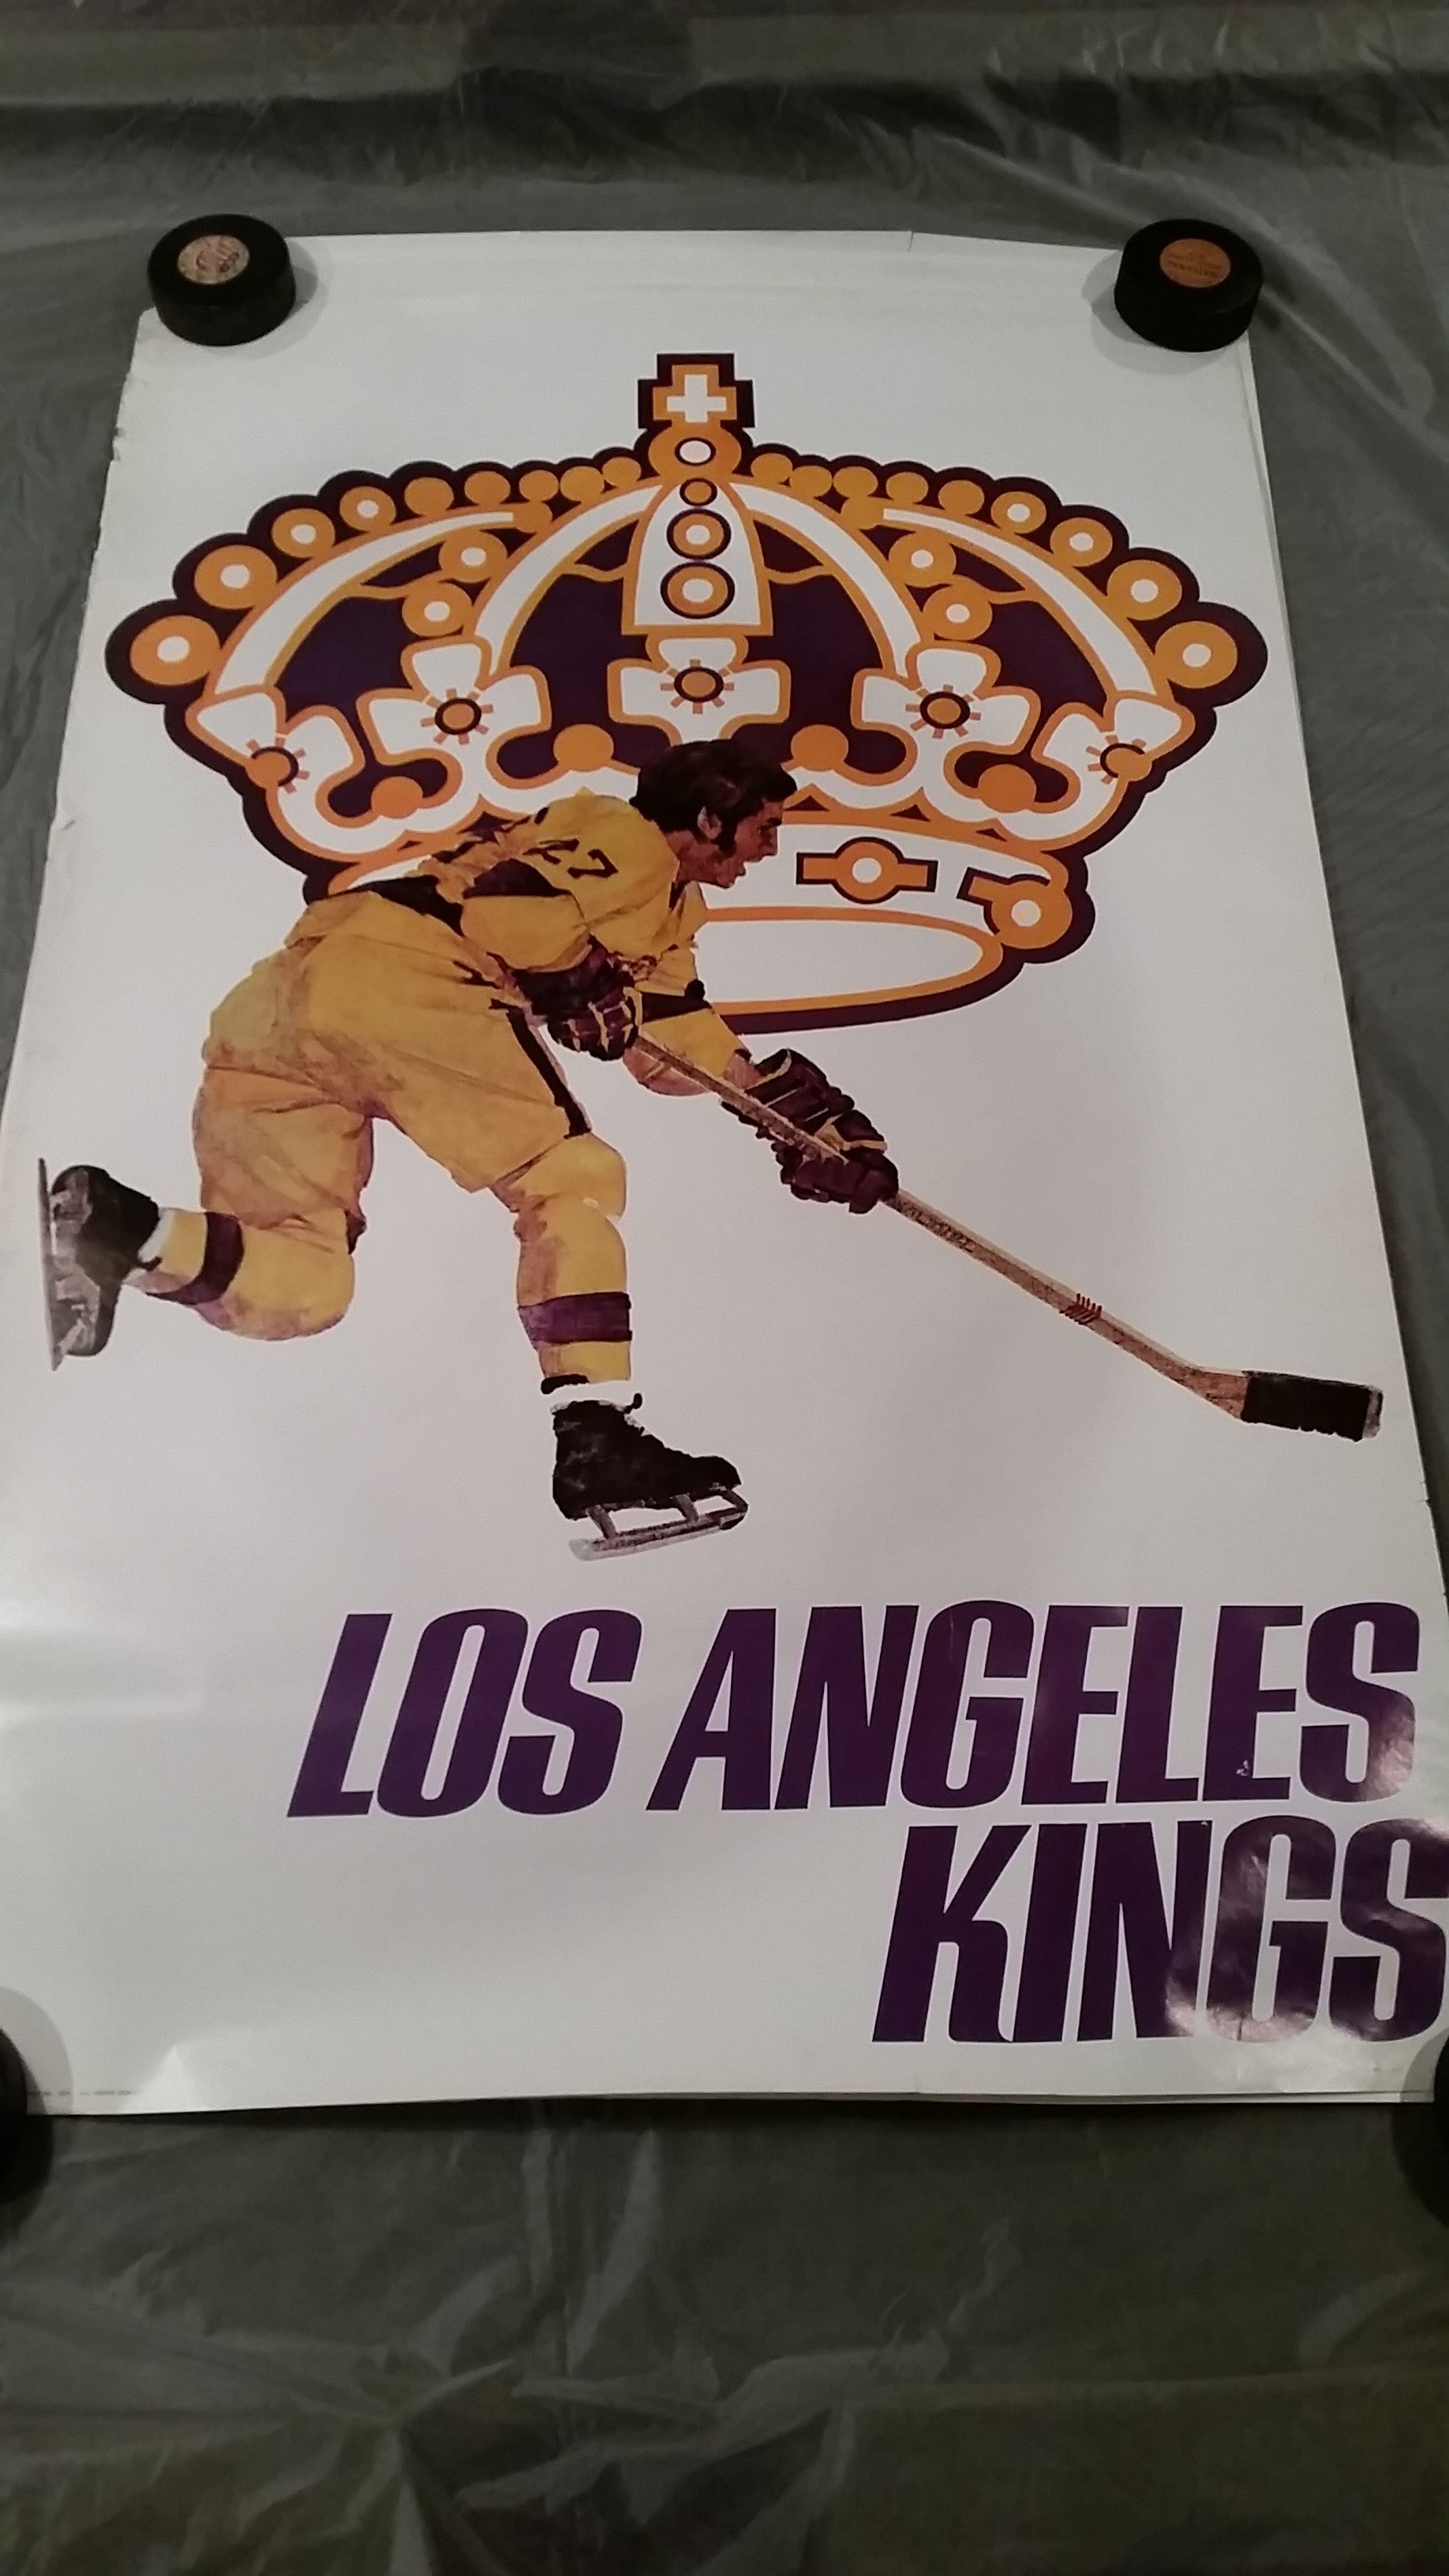 Los Angeles Kings vintage apparel